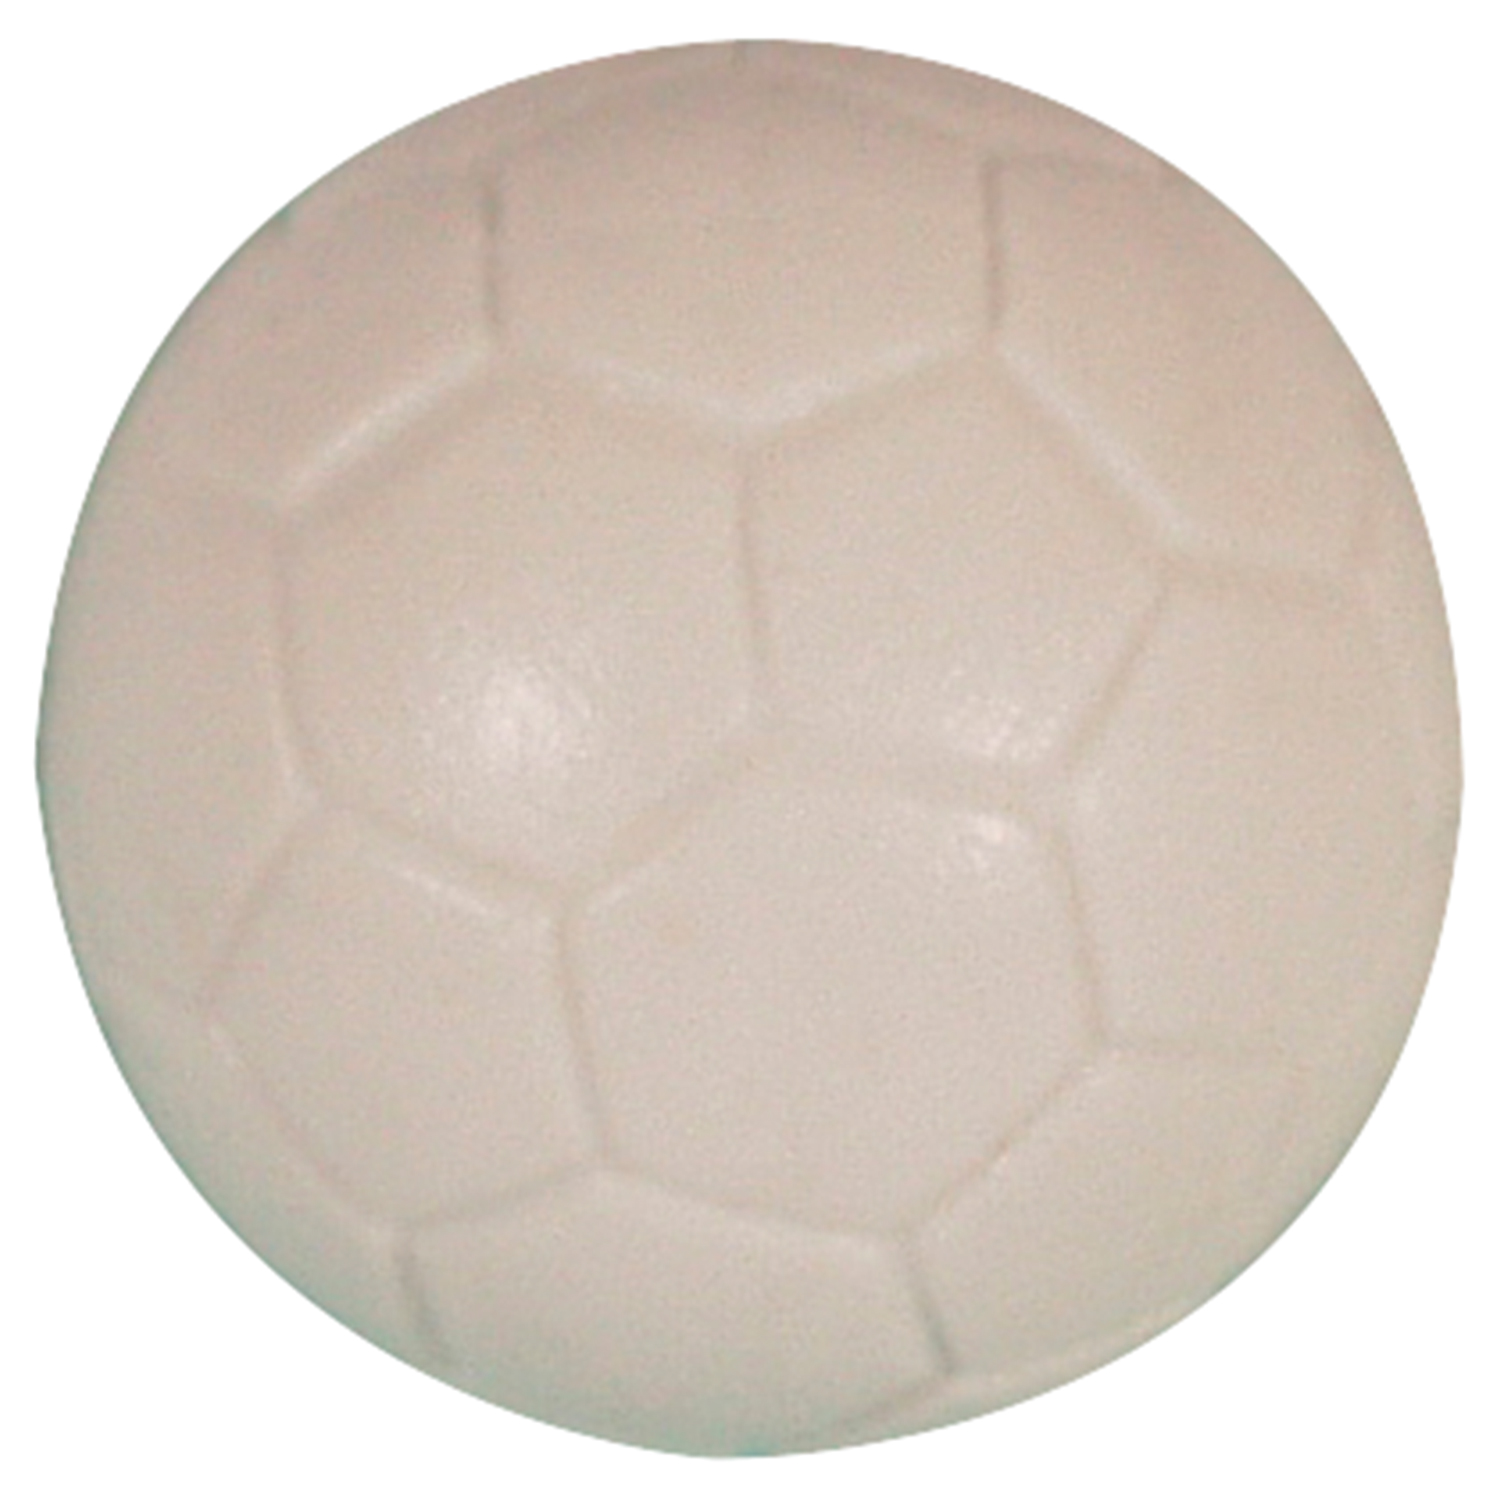 Balón De Futbolín Buffalo 36 Mm Perfil Blanco 6 Piezas - blanco-multicolor - 